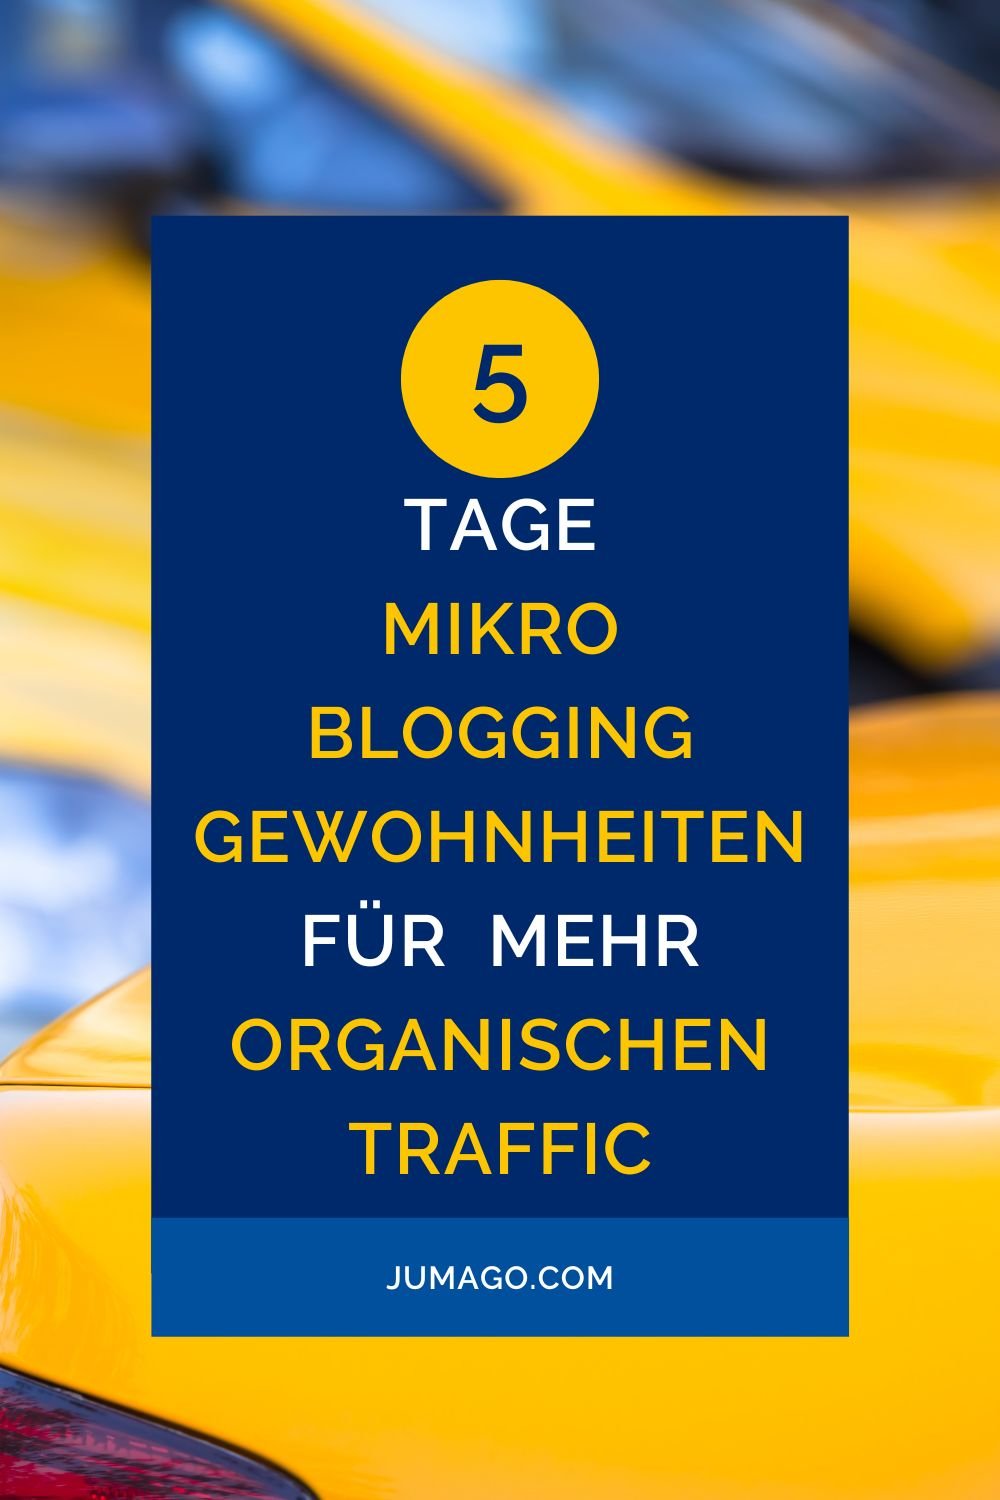 5 Tage-Mikroblogging-Gewohnheiten für organischen Traffic